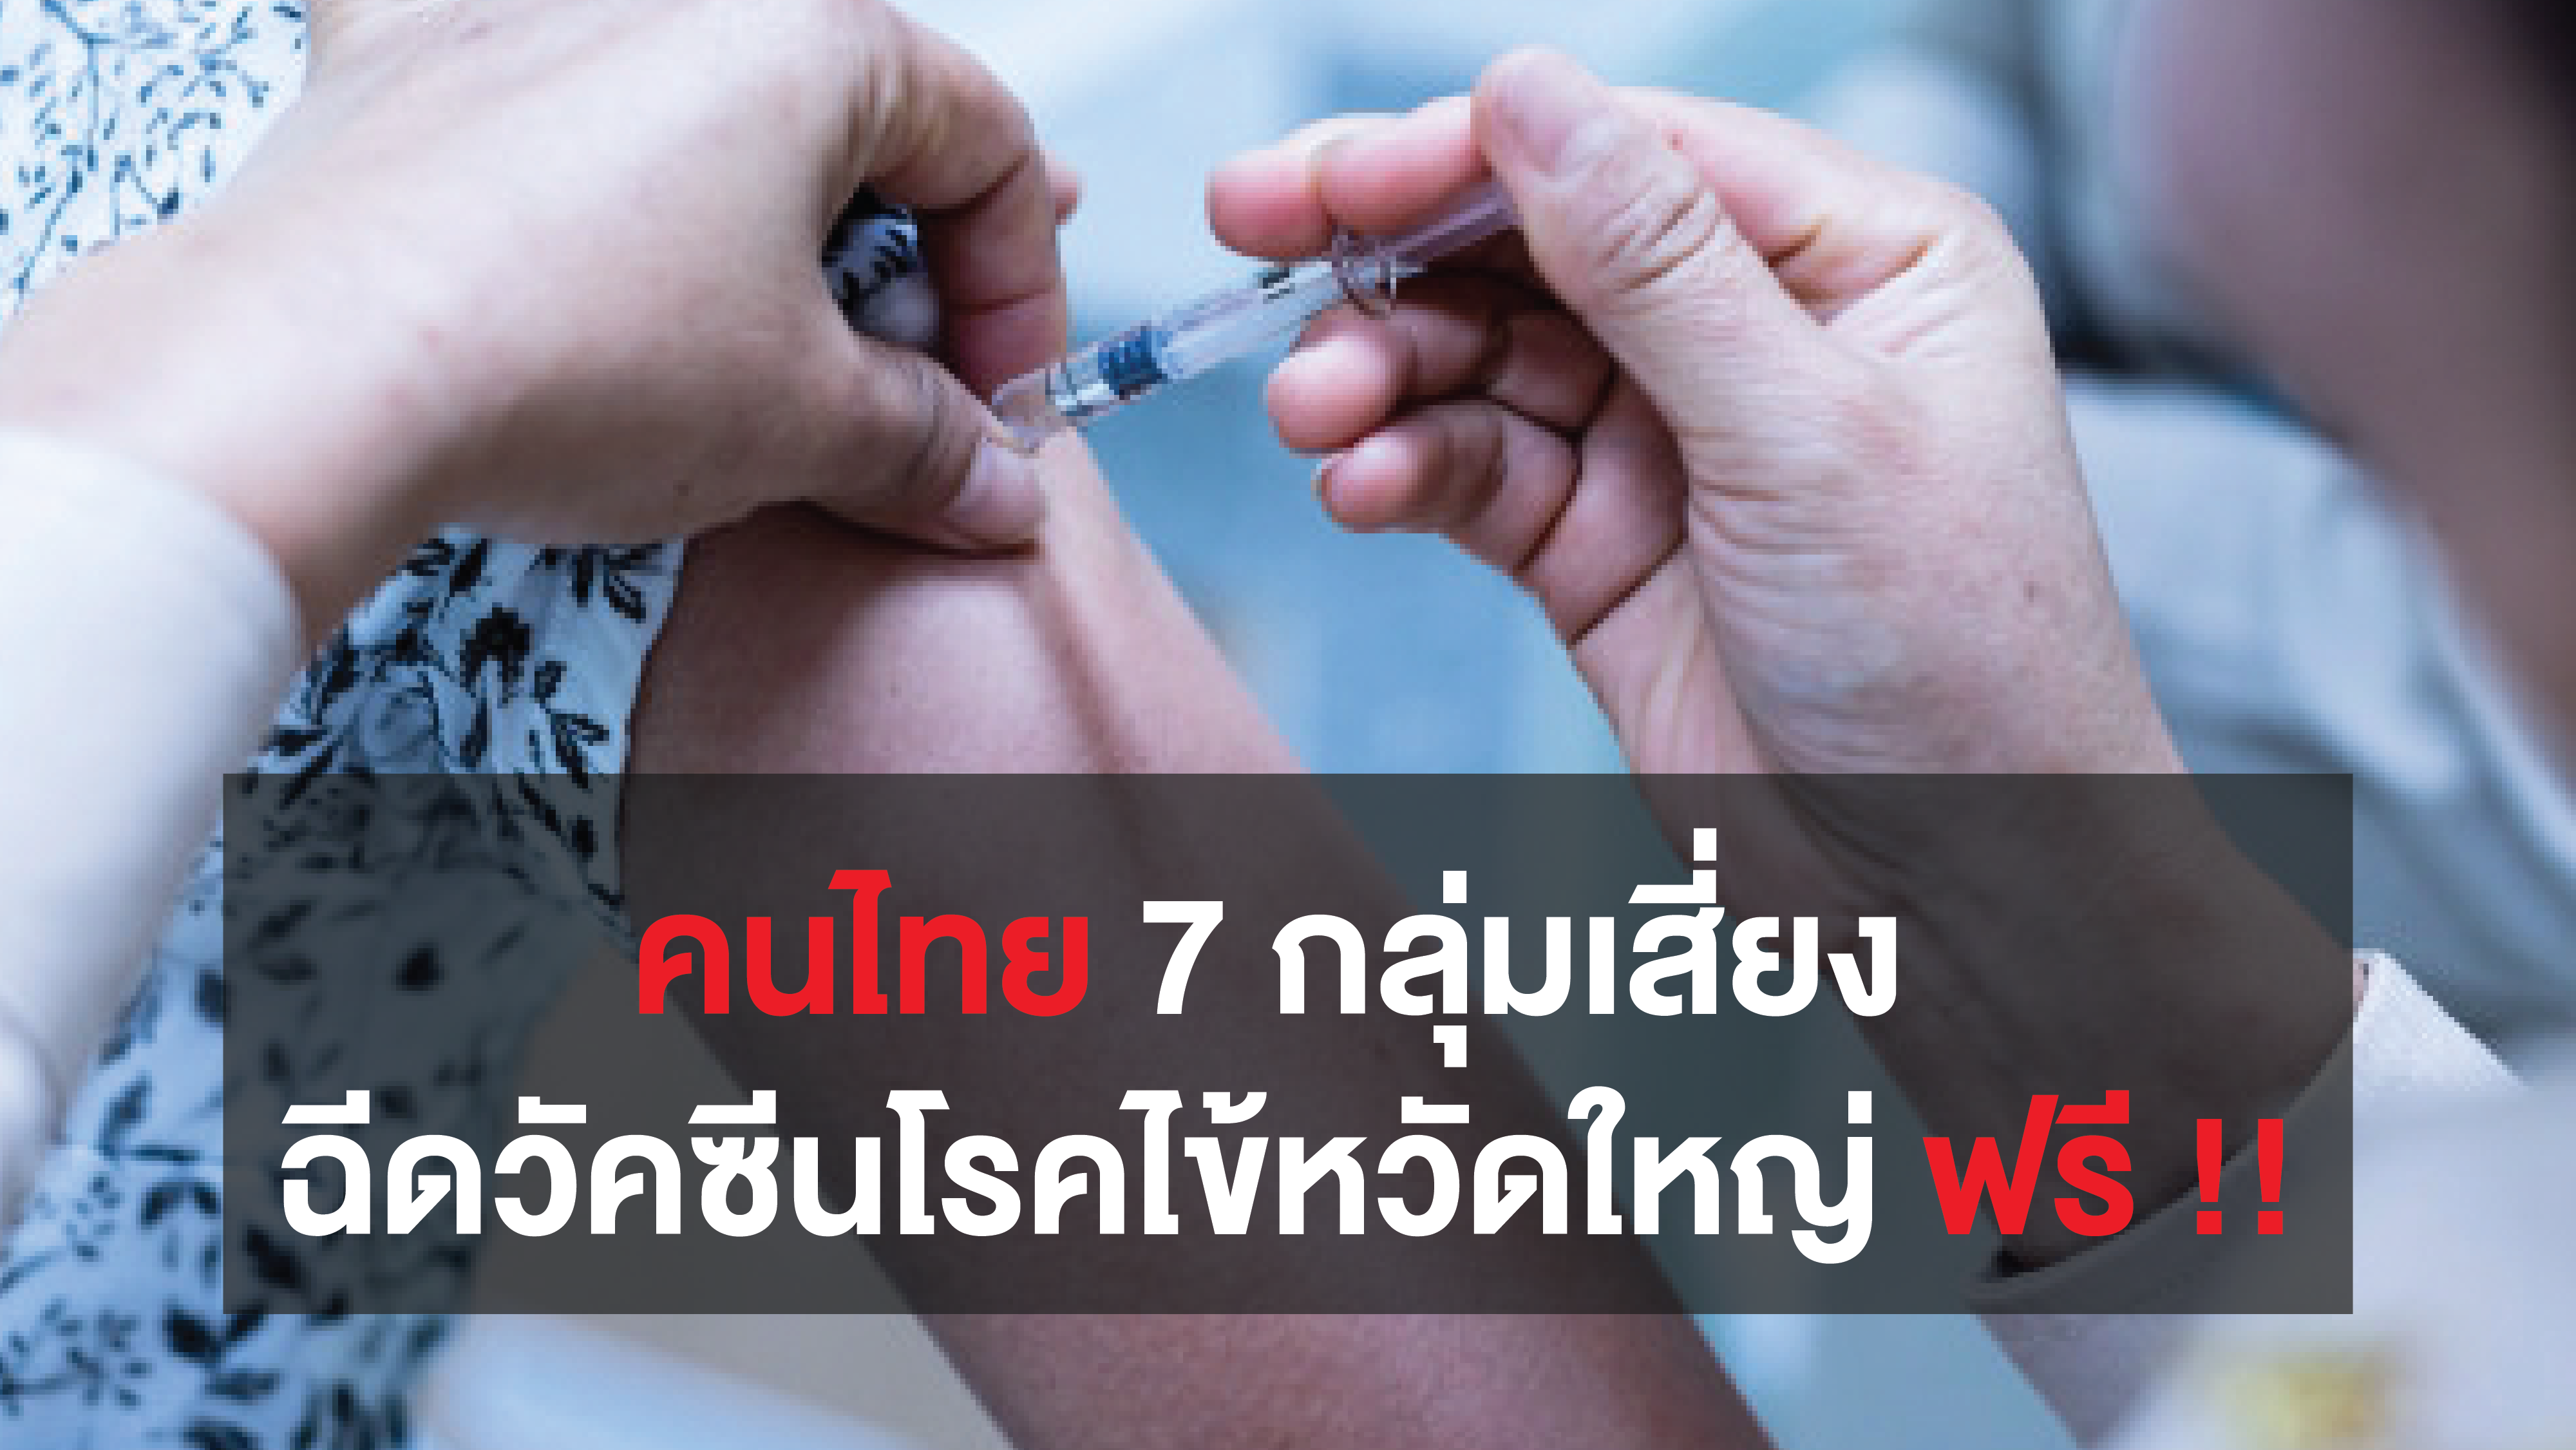 คนไทย  7 กลุ่มเสี่ยง ฉีดวัคซีนป้องกันโรคไข้หวัดใหญ่ ฟรี !! เริ่ม 1 พ.ค. ถึง 31 ส.ค. 63